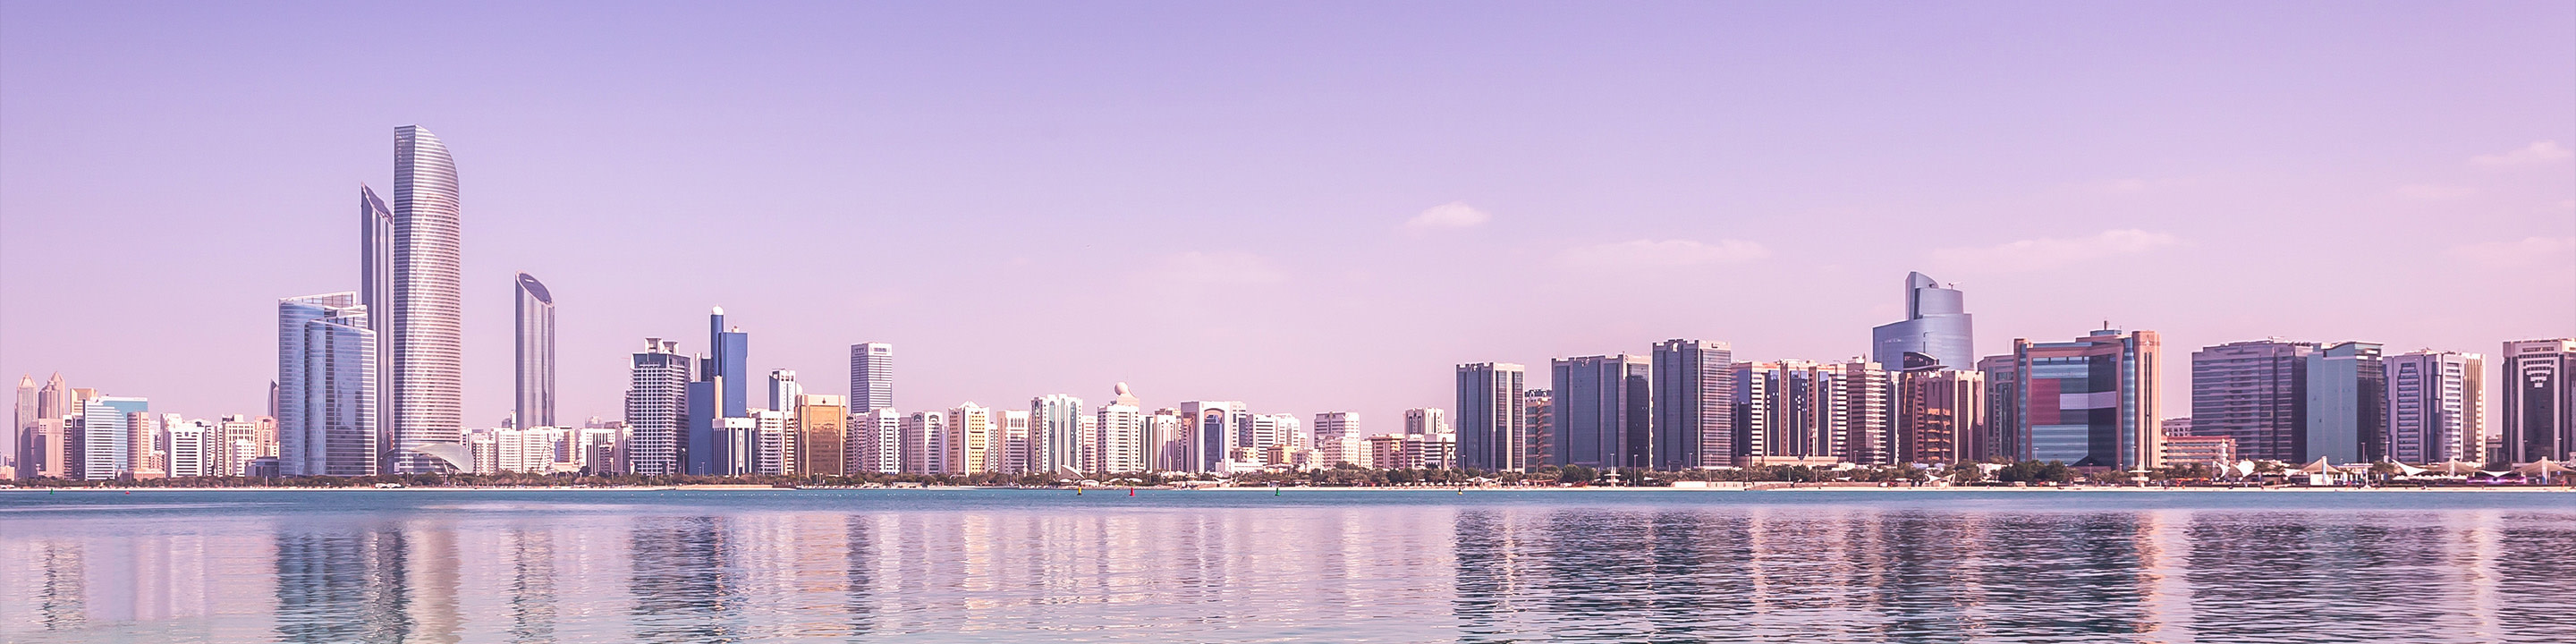 El extenso horizonte de Dubai en el contexto de la luz morada del anochecer o el amanecer.